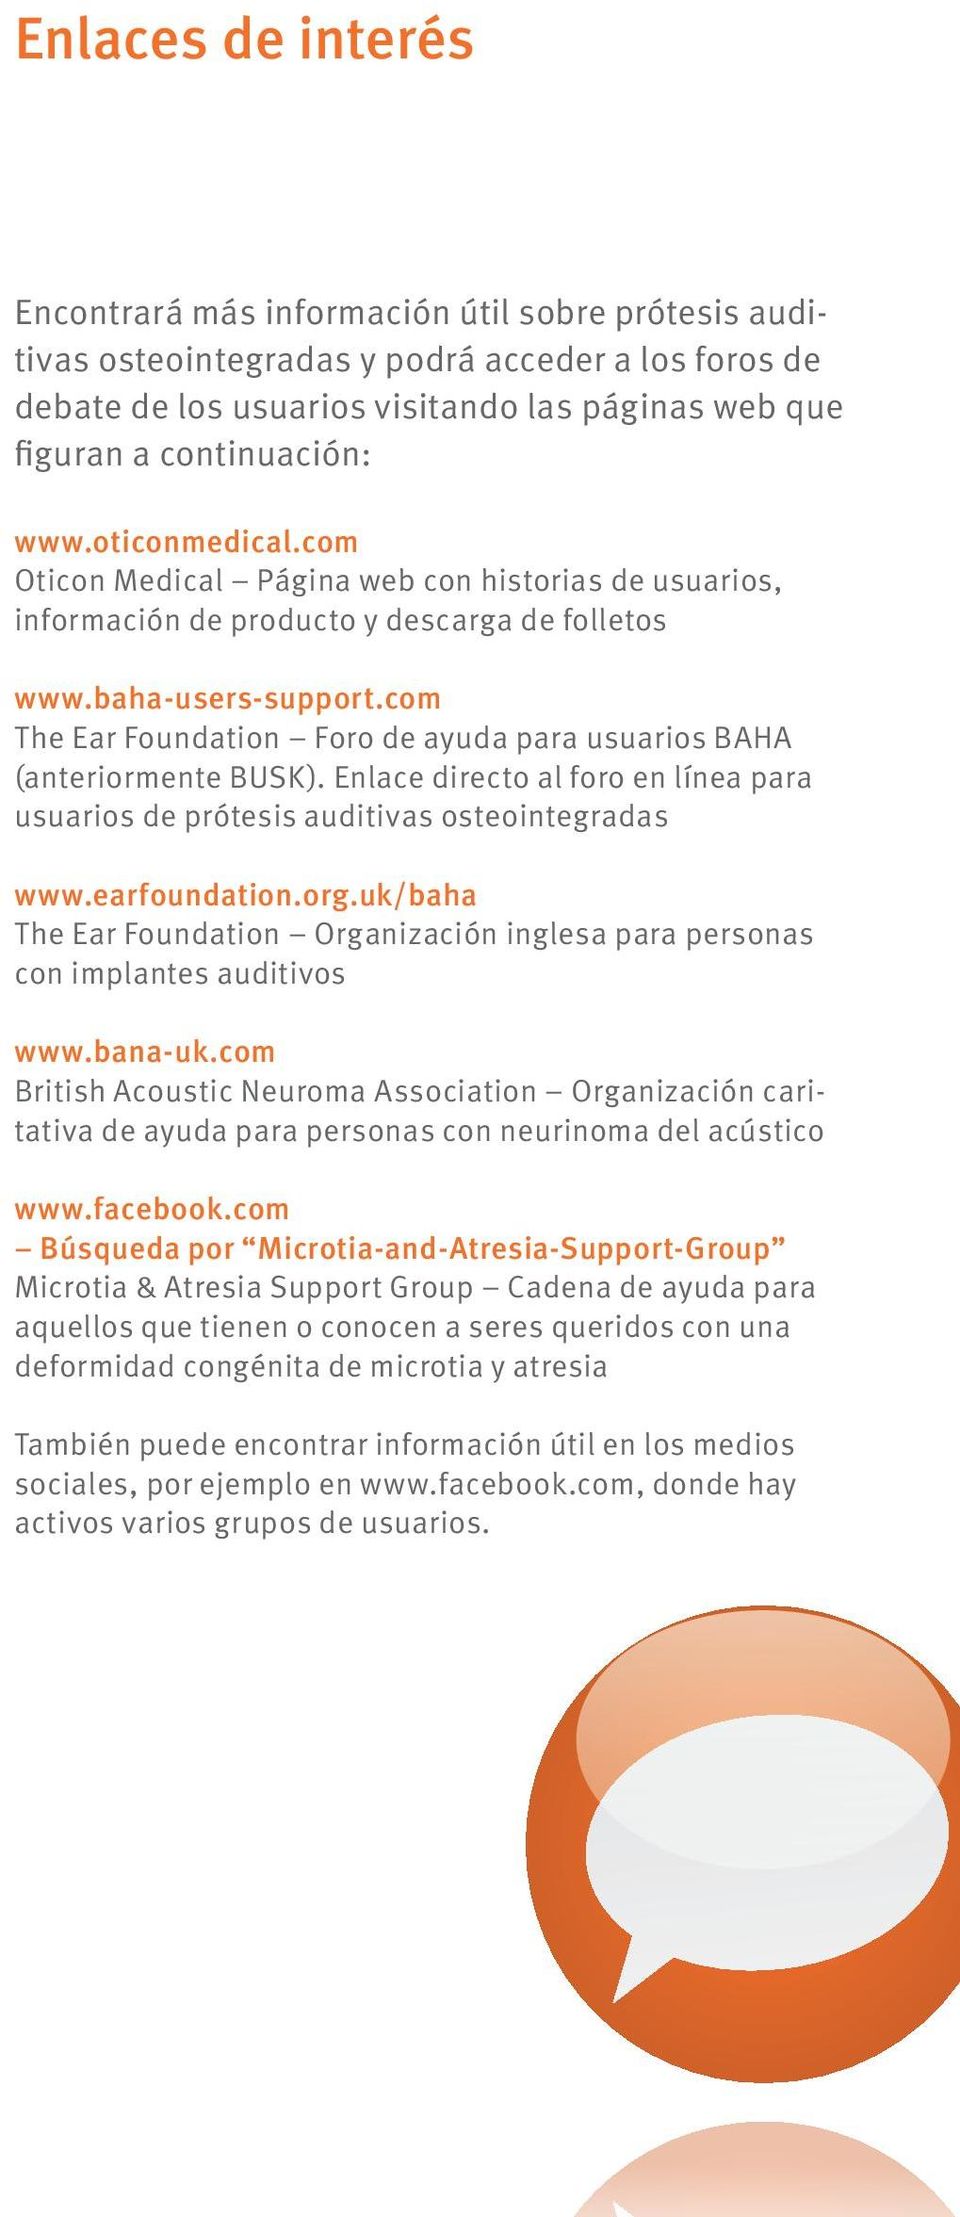 com The Ear Foundation Foro de ayuda para usuarios BAHA (anteriormente BUSK). Enlace directo al foro en línea para usuarios de prótesis auditivas osteointegradas www.earfoundation.org.